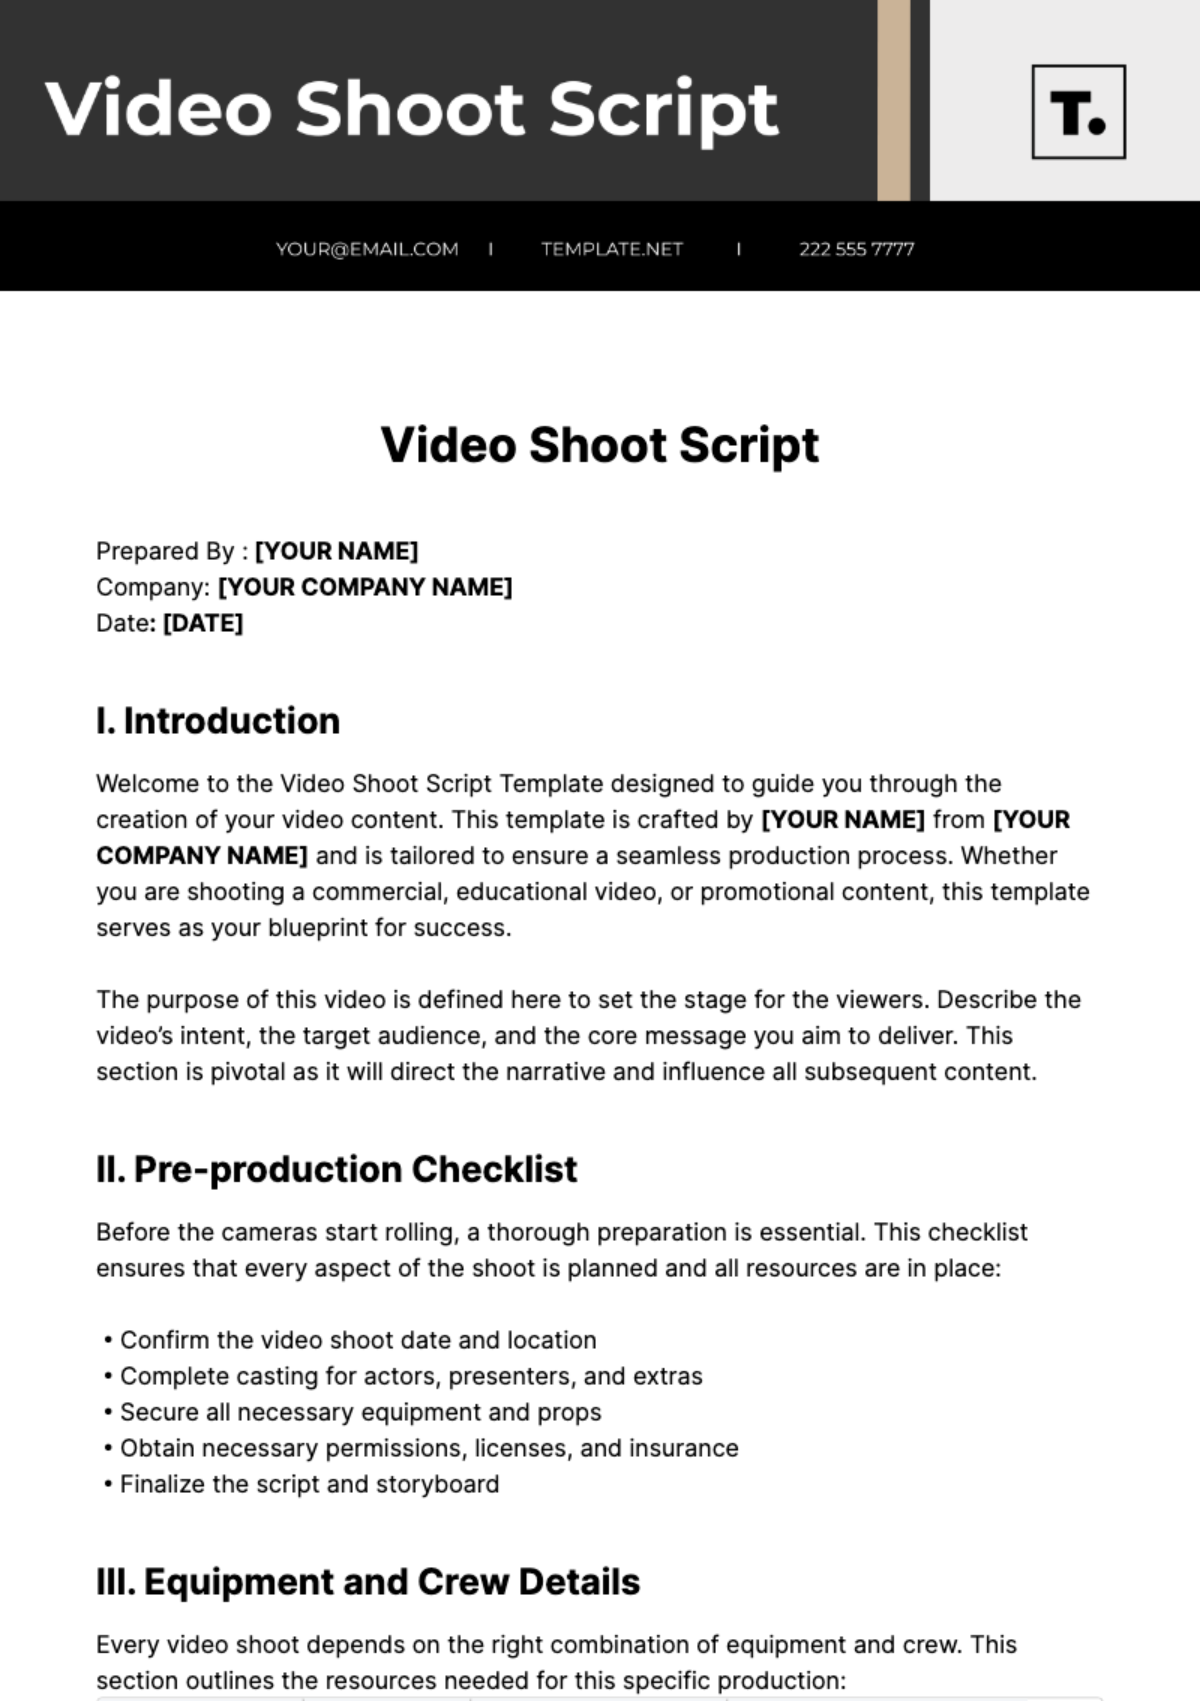 Video Shoot Script Template